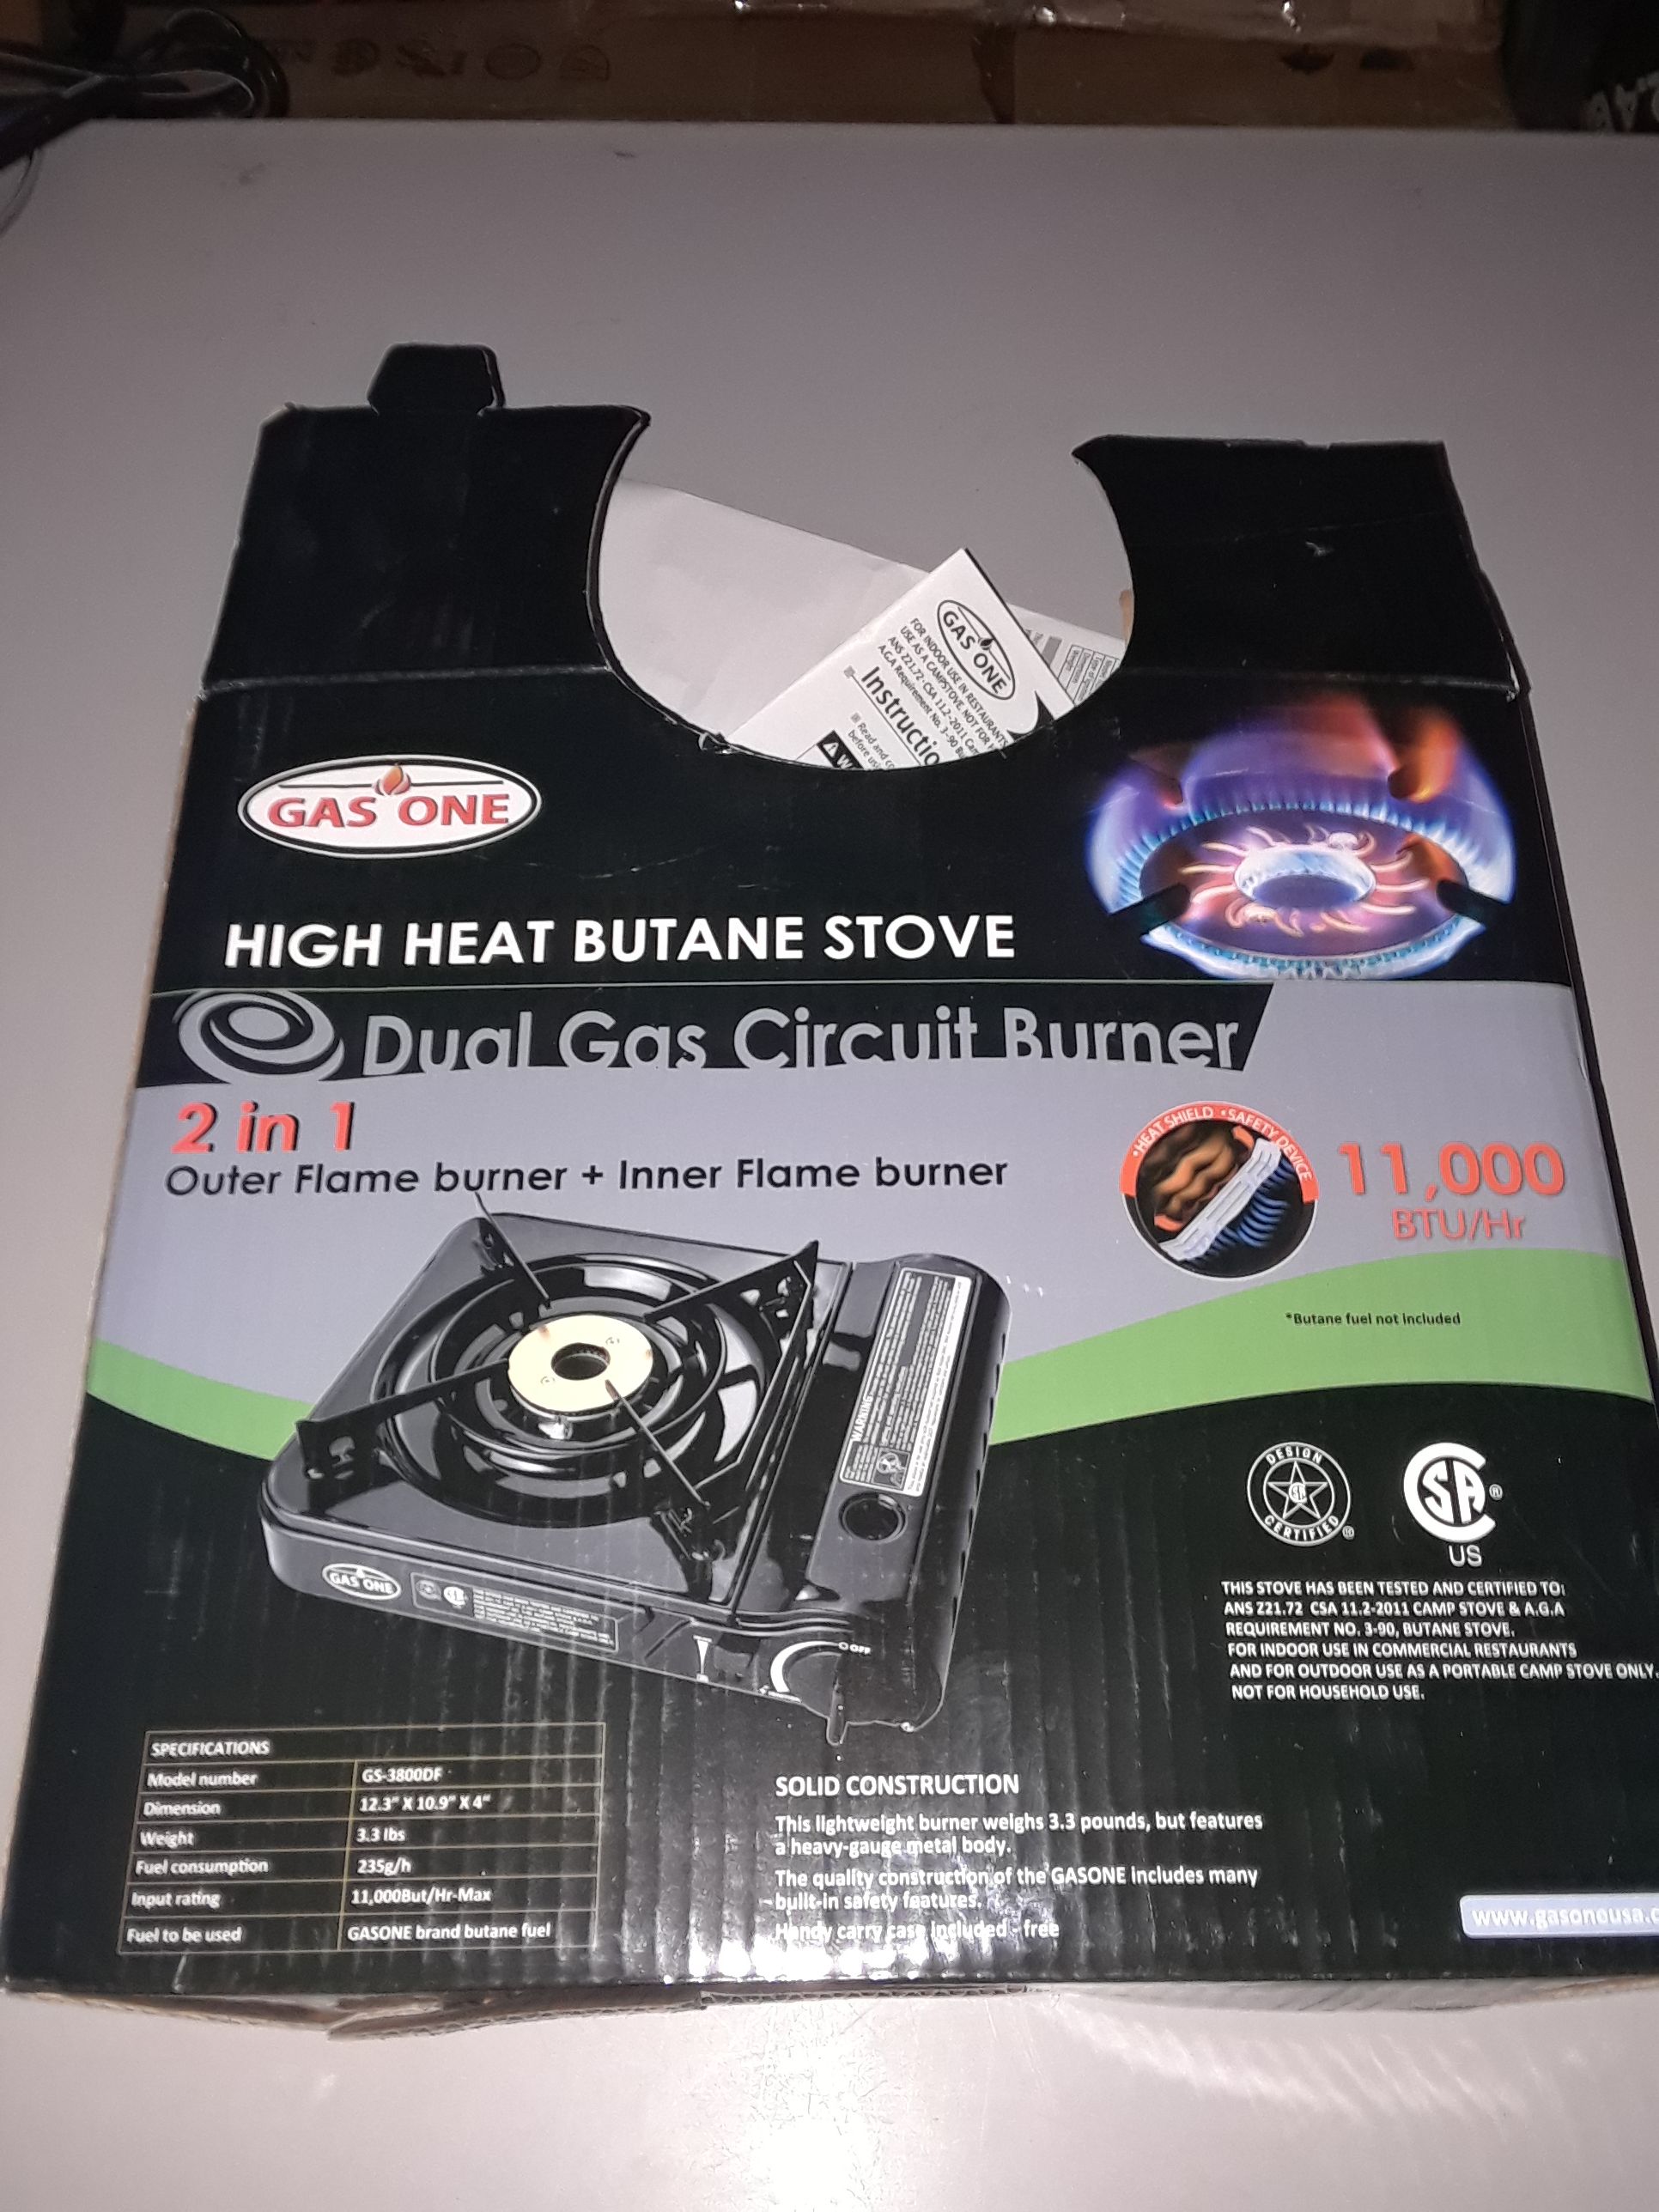 Portable stove with butane